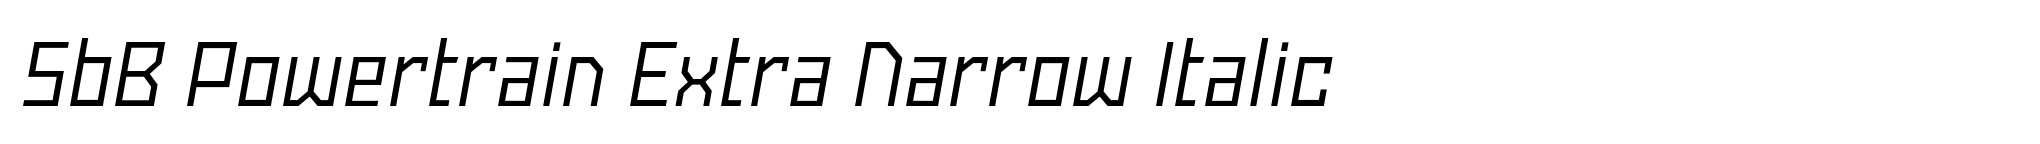 SbB Powertrain Extra Narrow Italic image